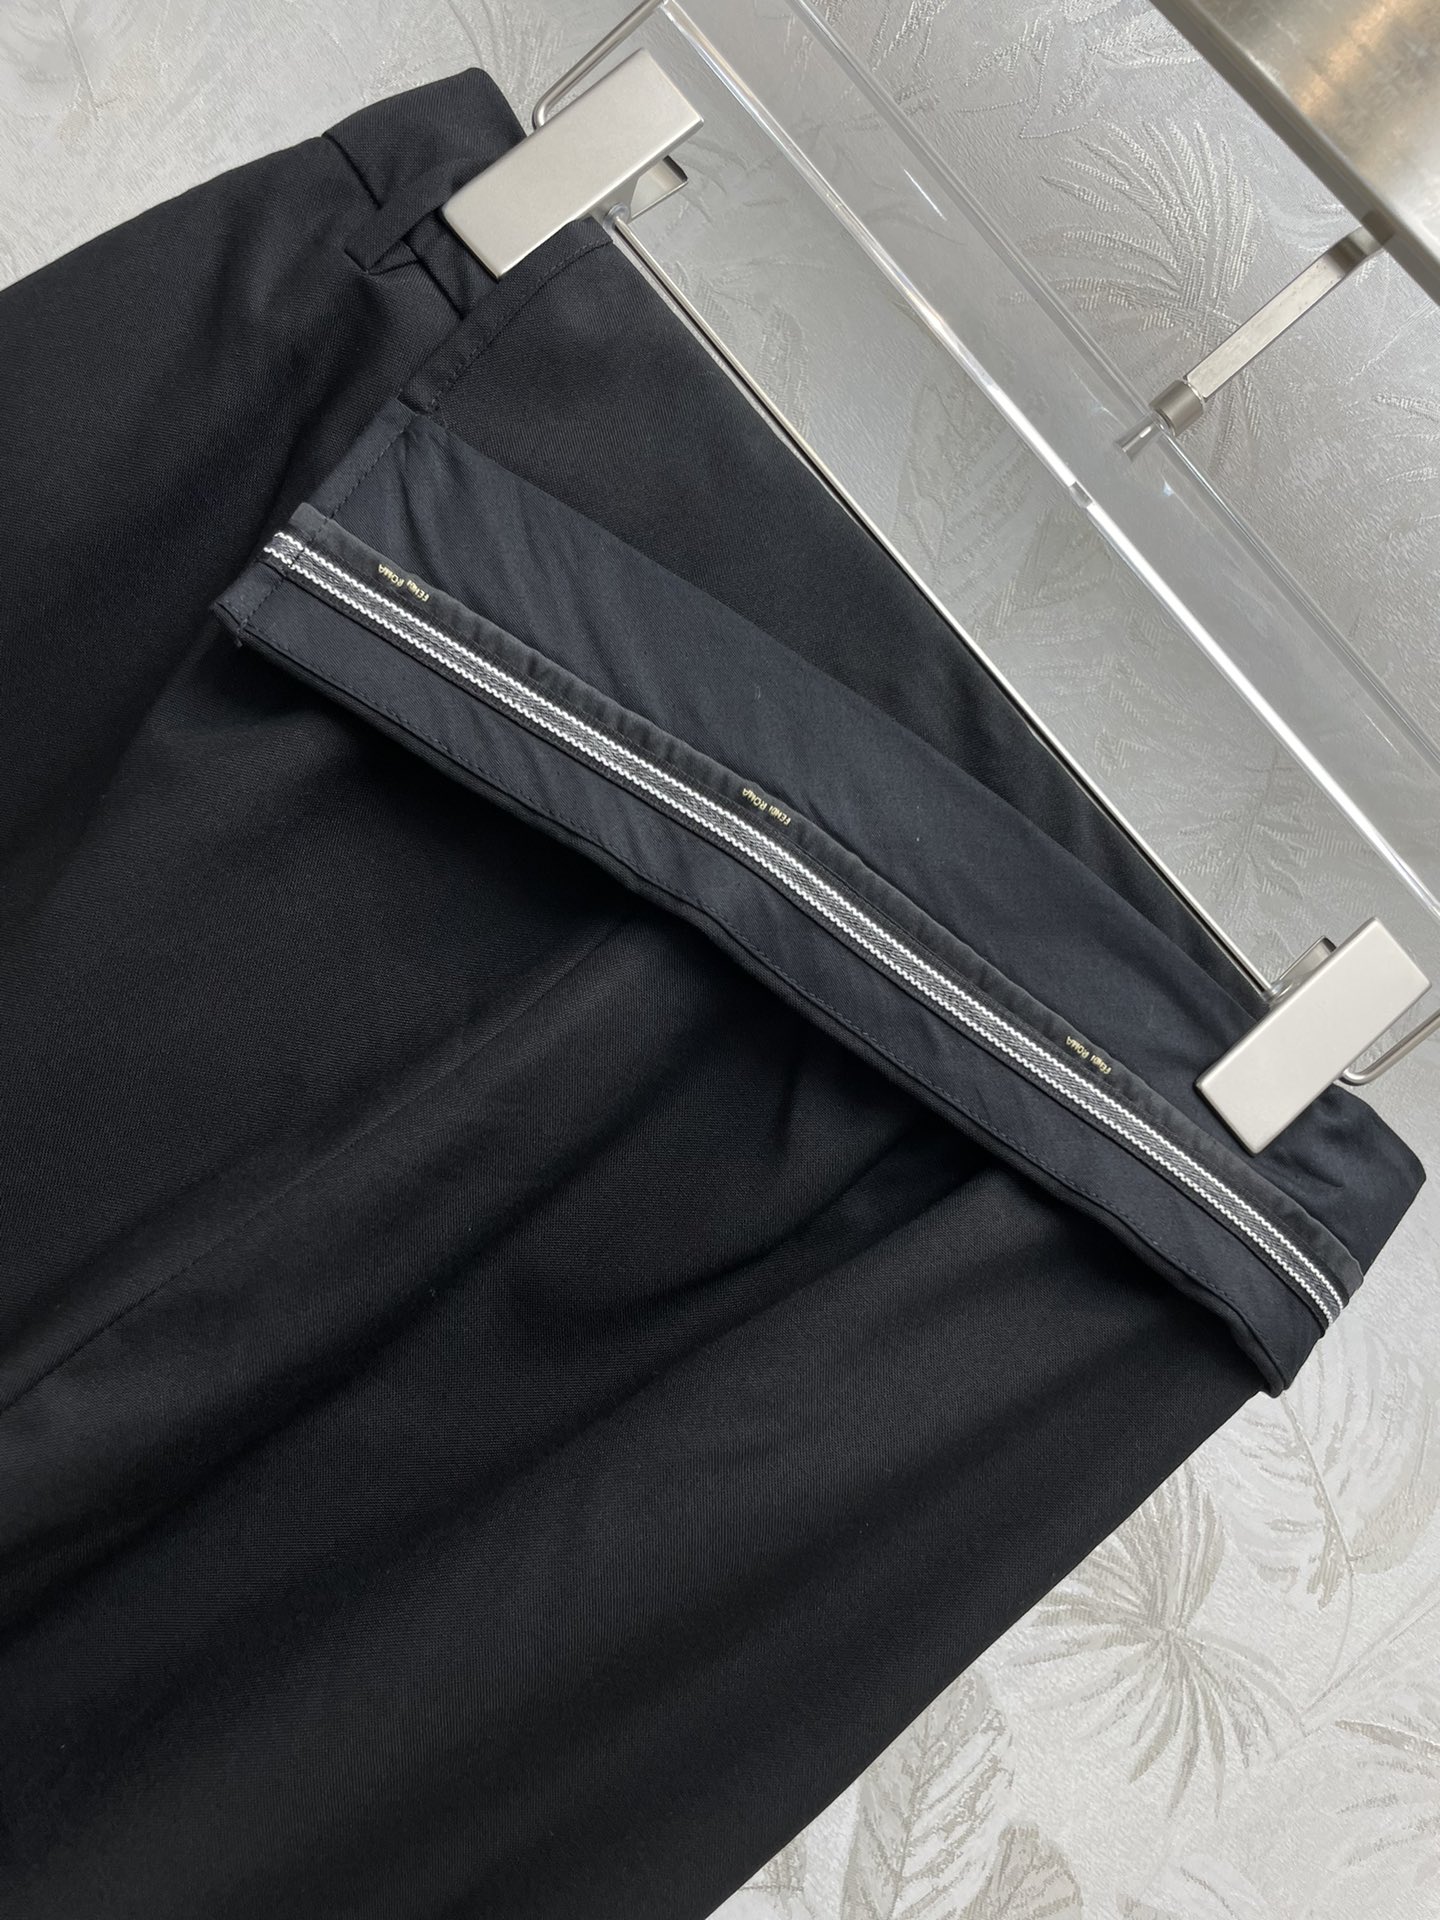 FD24春夏翻边式设计不规则西服裤高腰直筒修身裤型恰到好处修饰腿型腰头翻边式的设计非常新潮又有亮点定制的